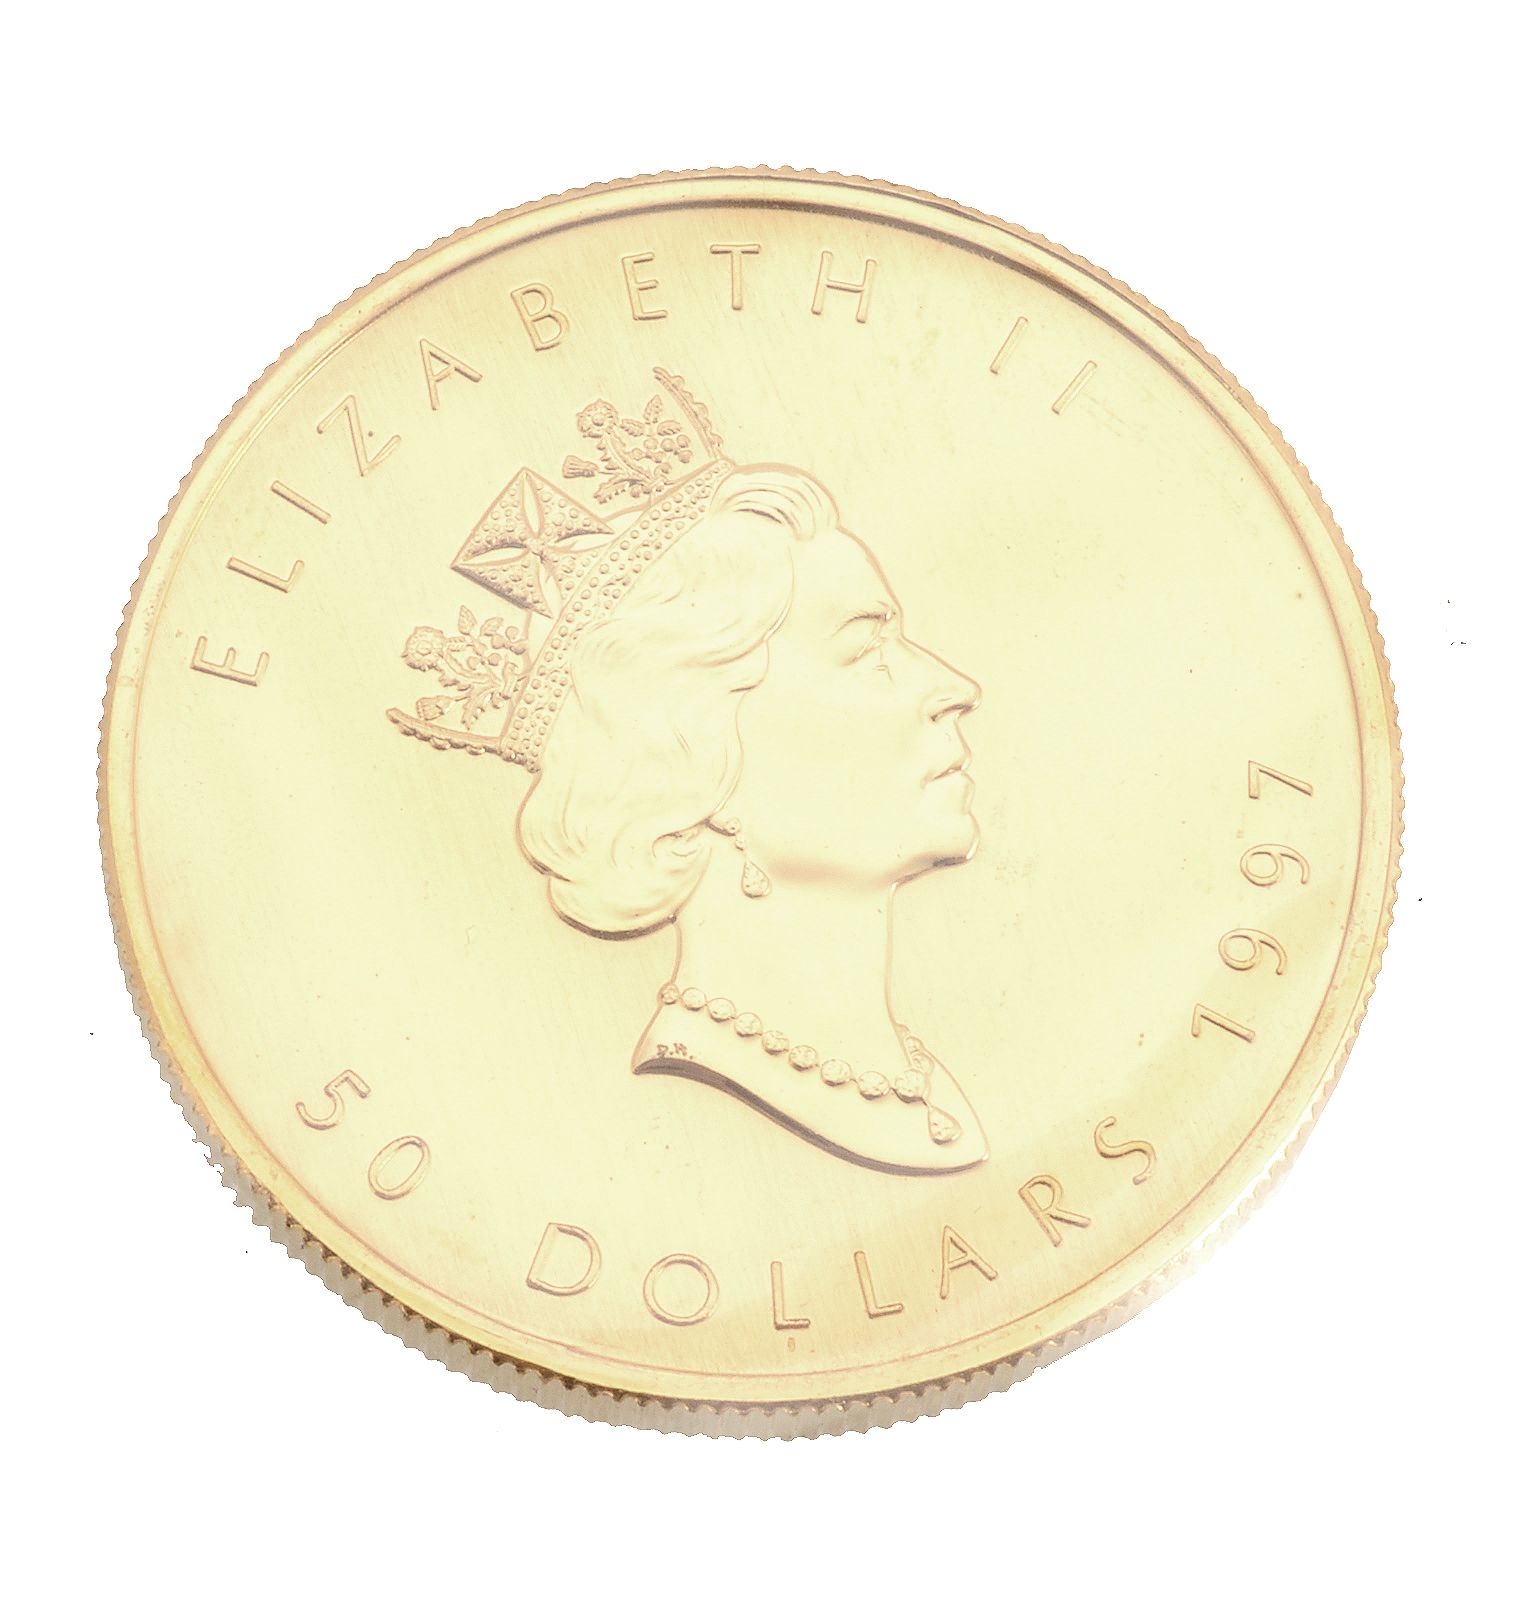 Canada, Elizabeth II, gold 50-Dollars 1998. Extremely fine